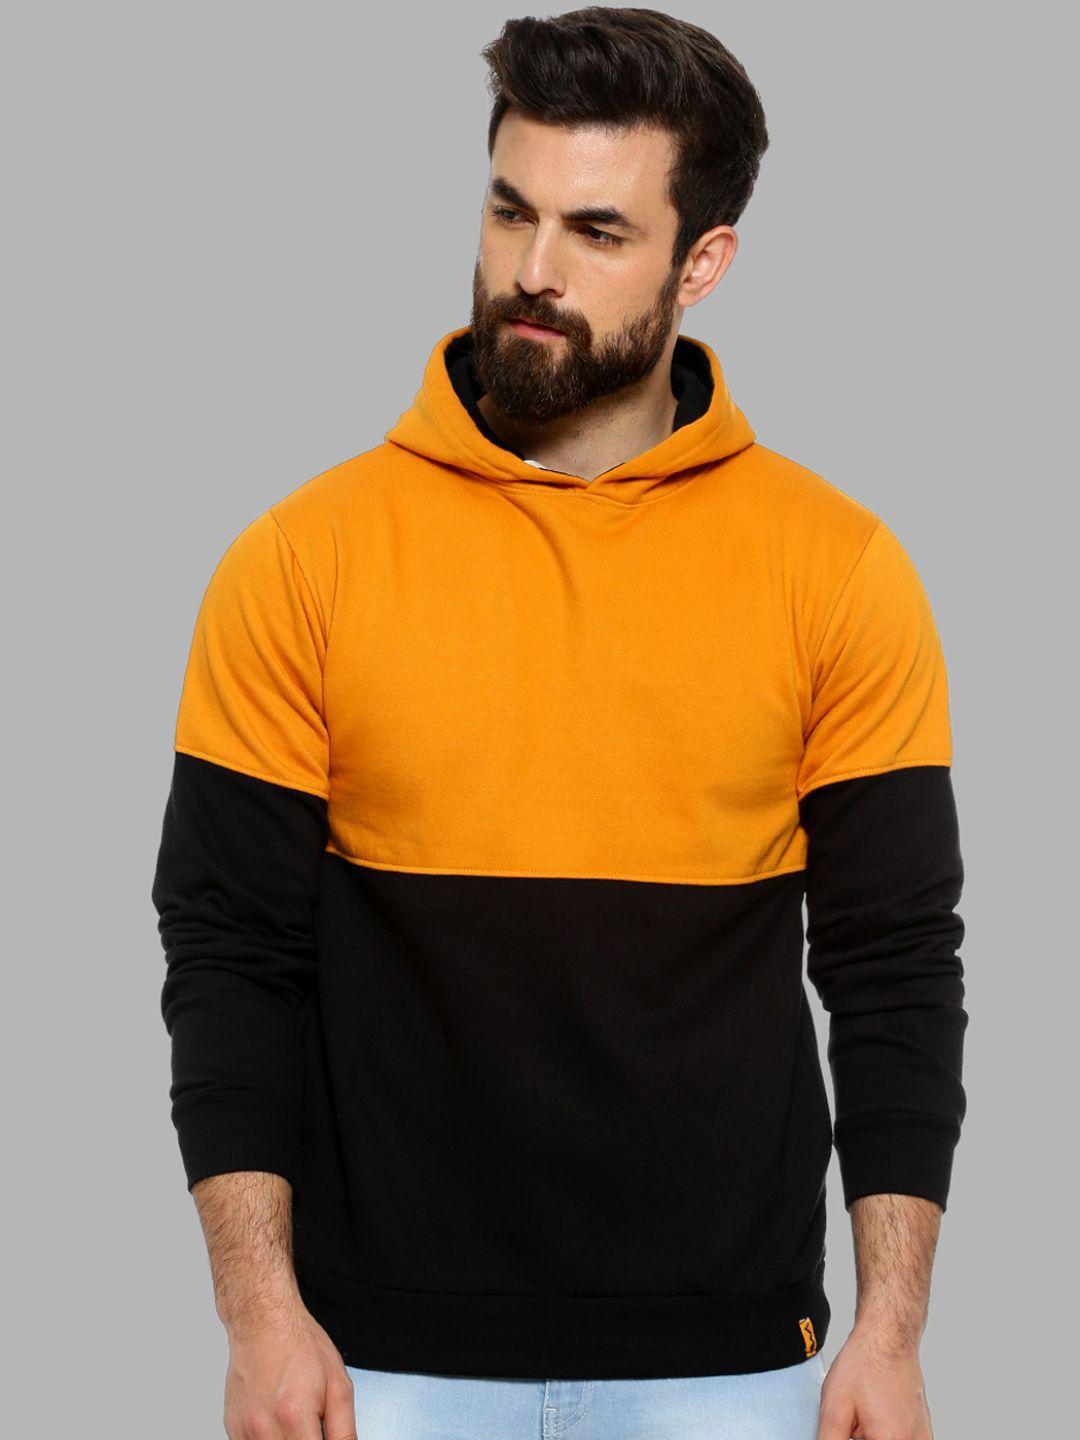 campus-sutra-men-mustard-&-black-colourblocked-hooded-sweatshirt